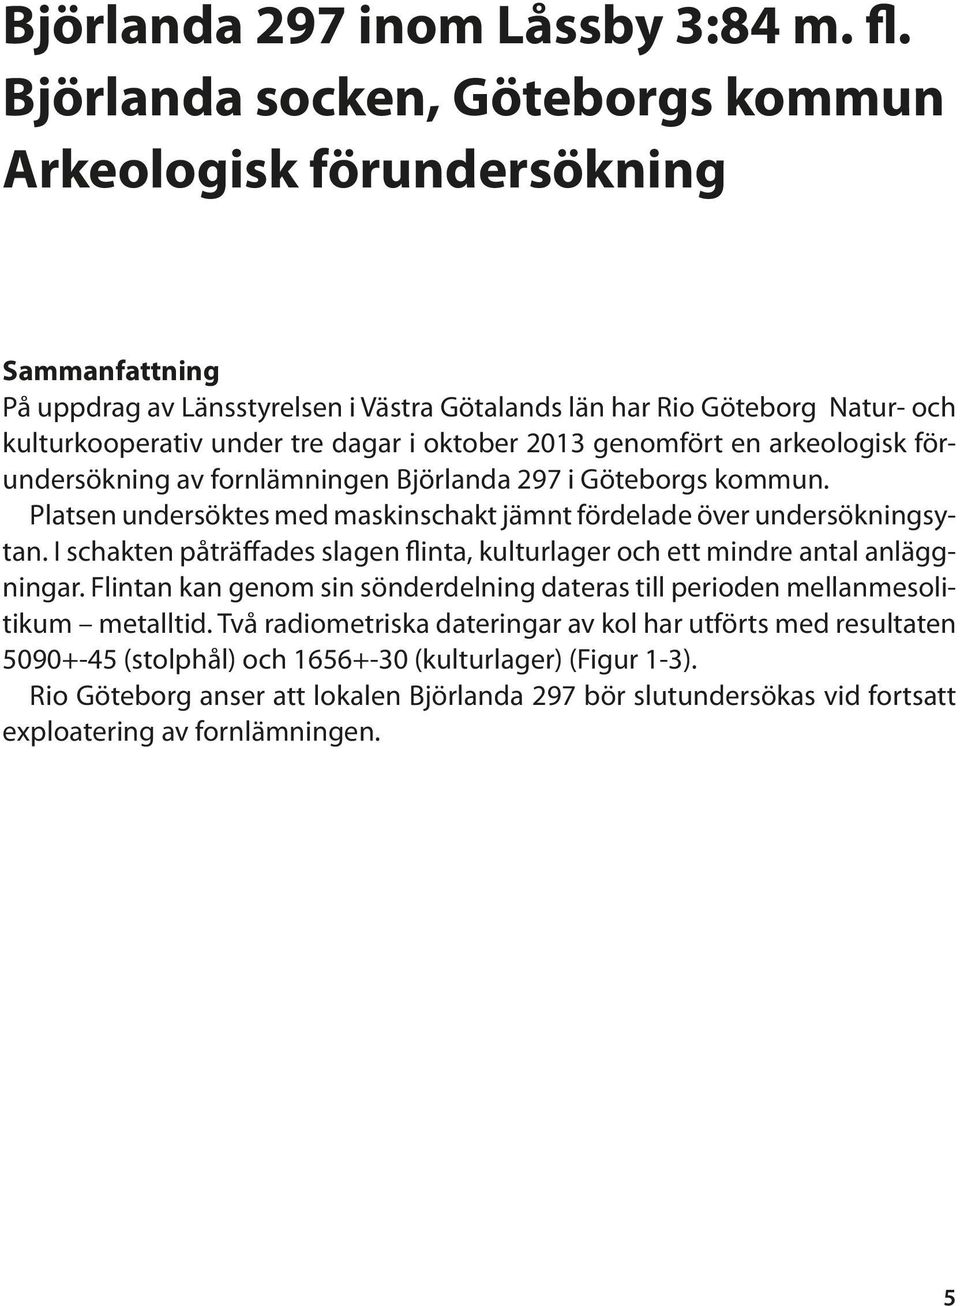 2013 genomfört en arkeologisk förundersökning av fornlämningen Björlanda 297 i Göteborgs kommun. Platsen undersöktes med maskinschakt jämnt fördelade över undersökningsytan.